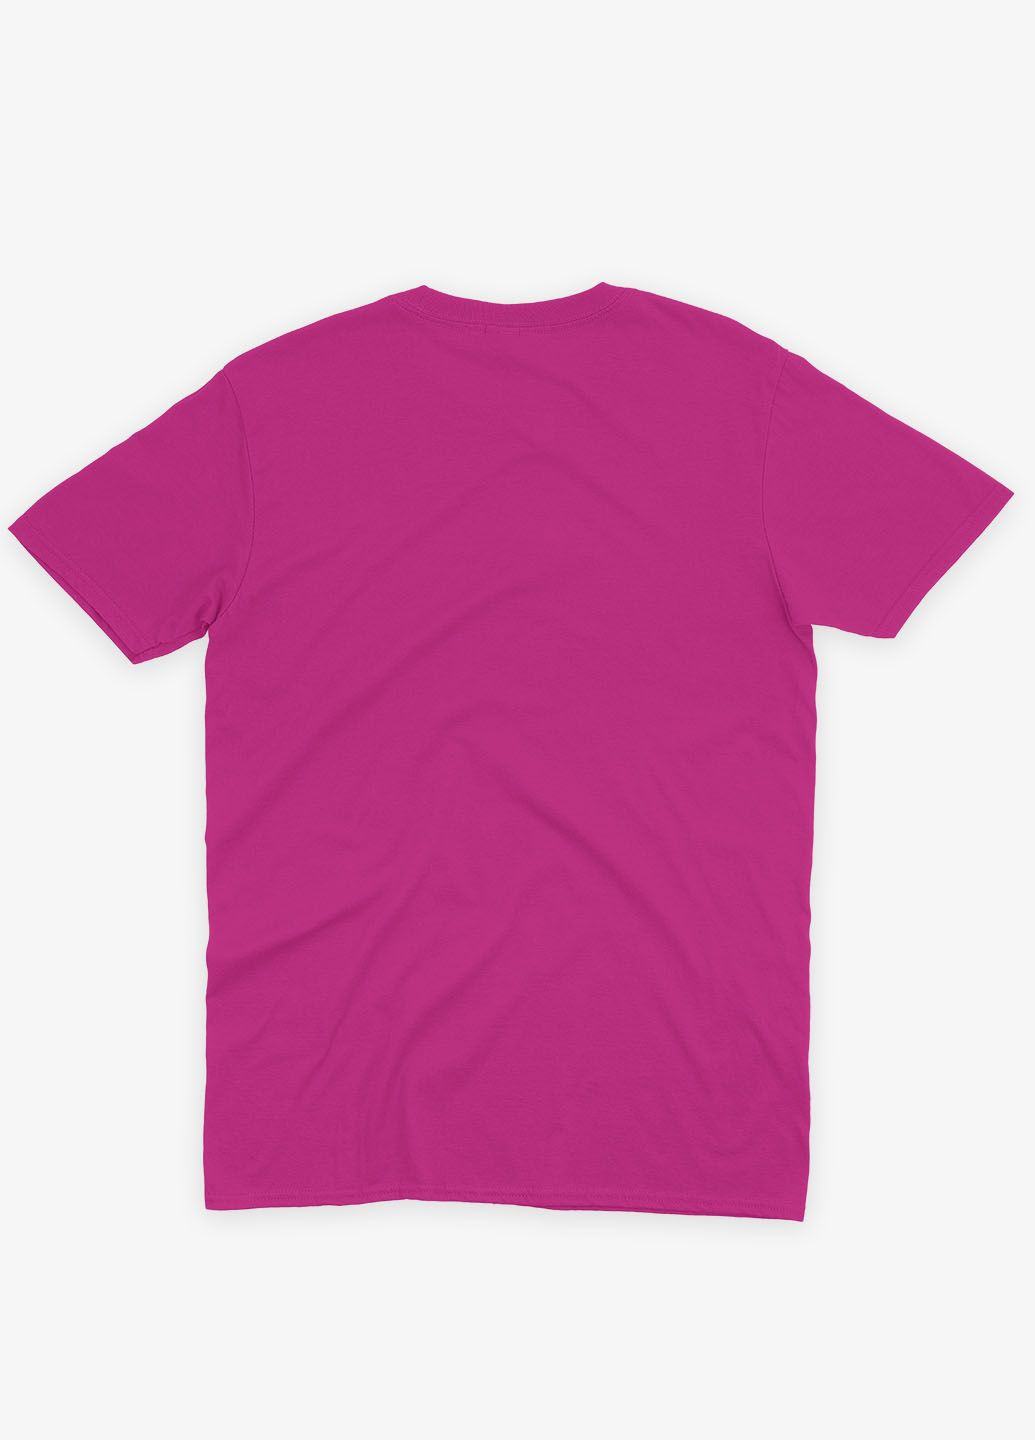 Розовая демисезонная футболка для девочки с принтом супезлоды - танос (ts001-1-fuxj-006-019-014-g) Modno